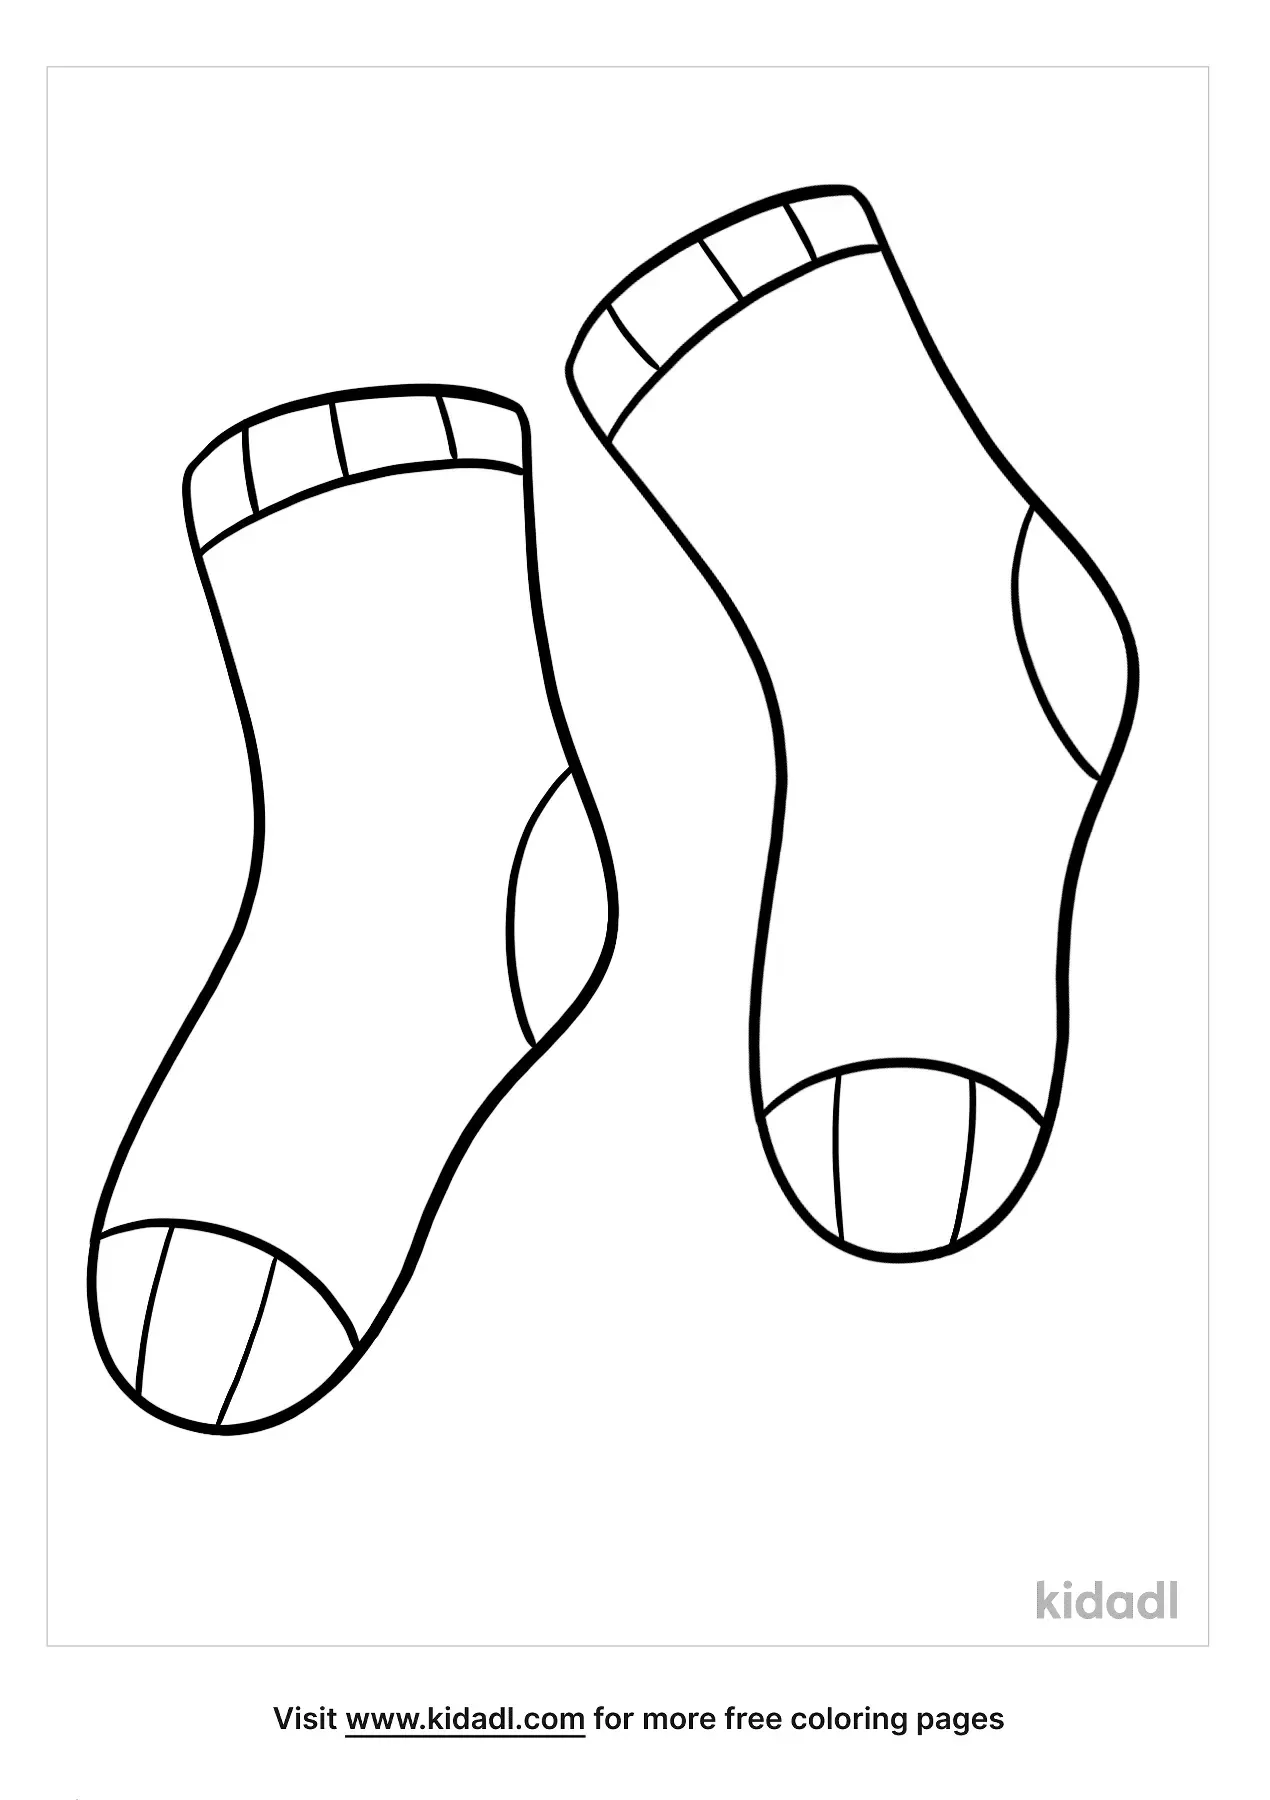 Özgünlük takdire değer maymun socks coloring - infantearmolding.org